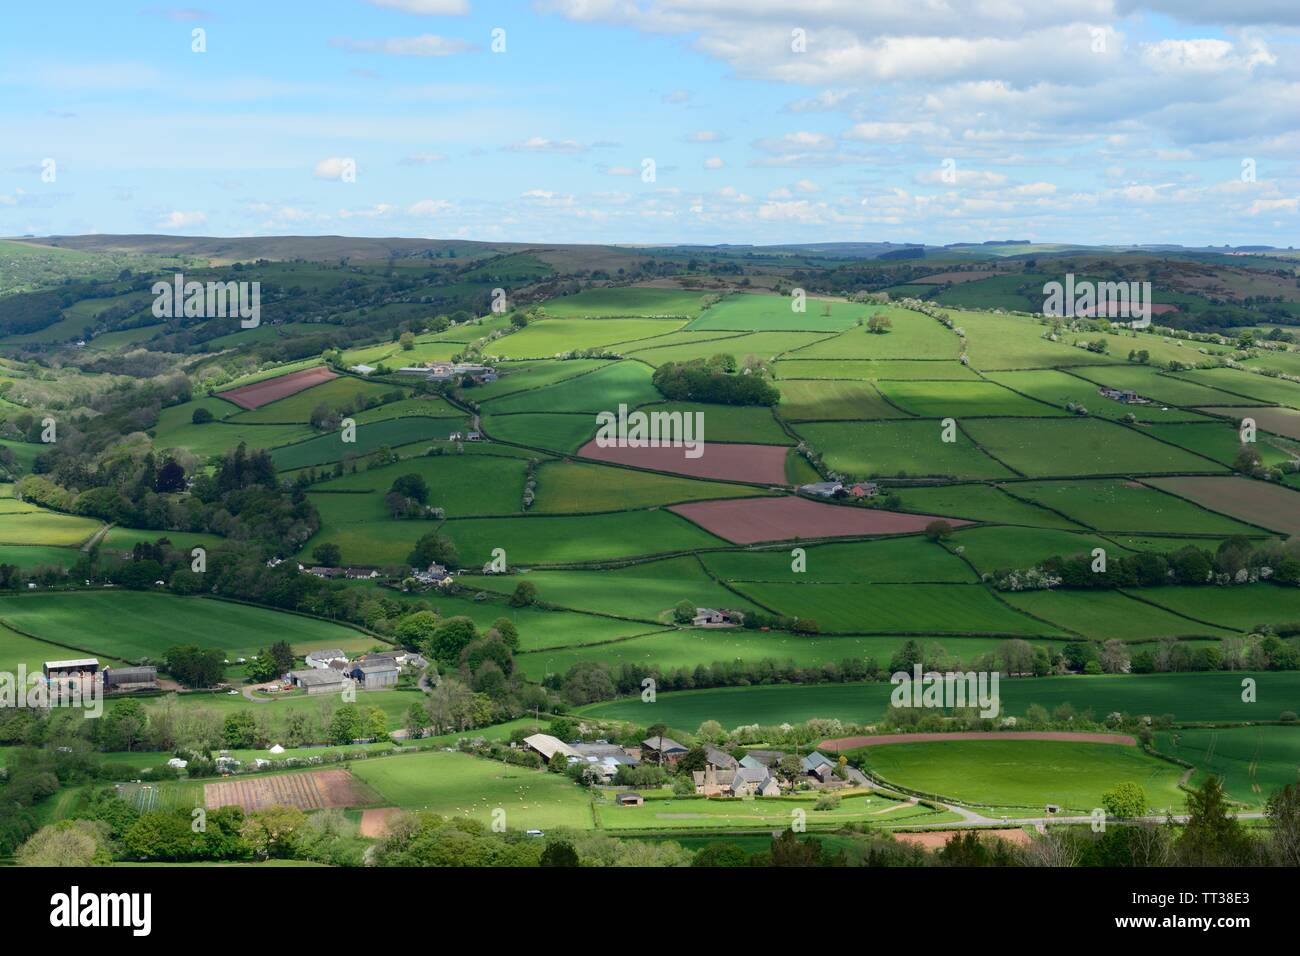 Patchwork pattern of farmland from Twyn y Gaer towards mid Wales Powys Wales Cymru UK Stock Photo